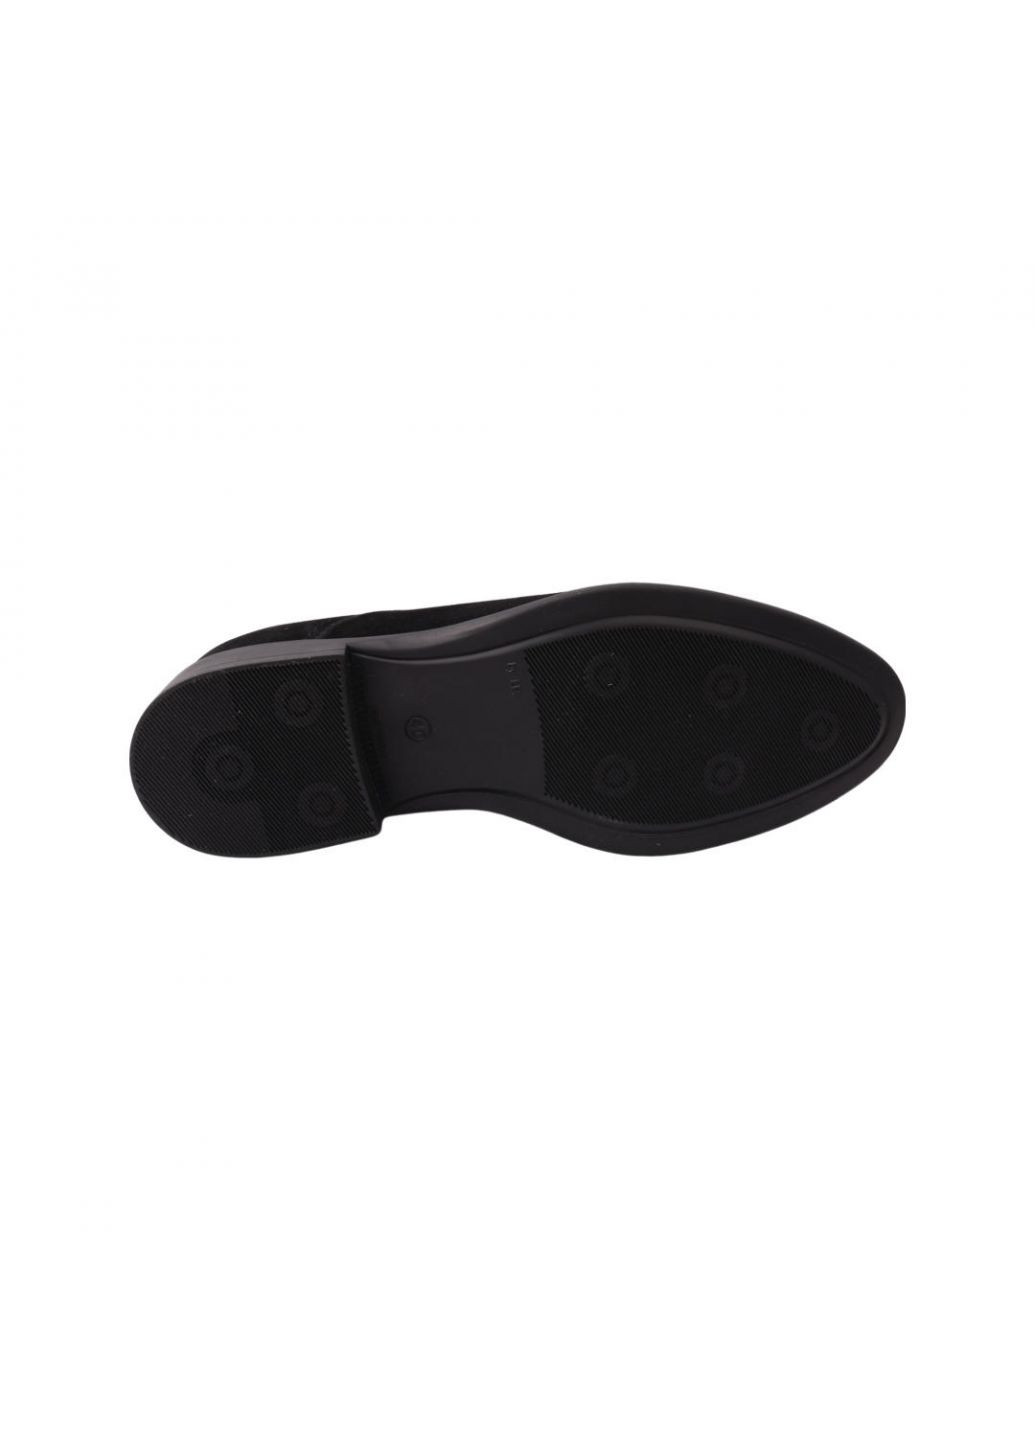 Туфлі чоловічі чорні натуральна замша Vadrus 367-21dt (257438385)